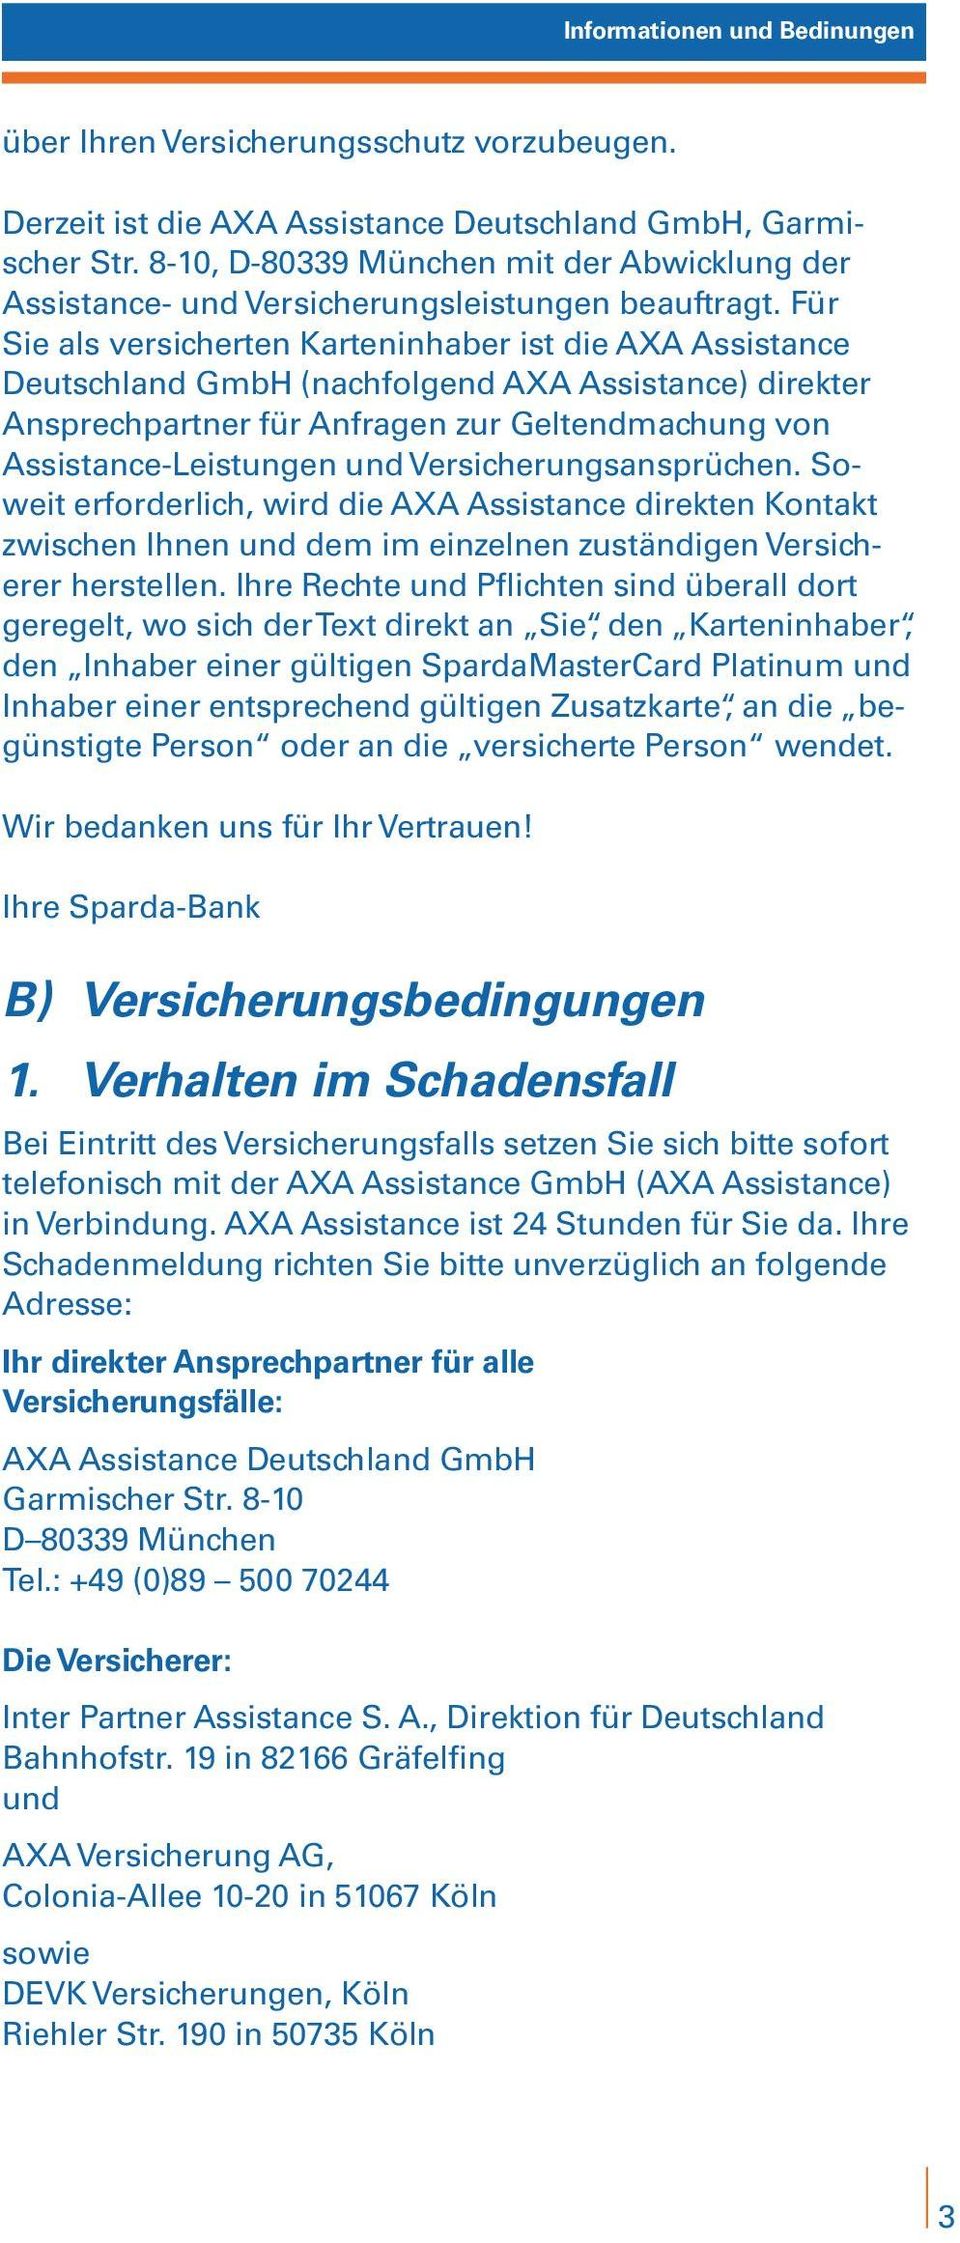 Für Sie als versicherten Karteninhaber ist die AXA Assistance Deutschland GmbH (nachfolgend AXA Assistance) direkter Ansprechpartner für Anfragen zur Geltendmachung von Assistance-Leistungen und